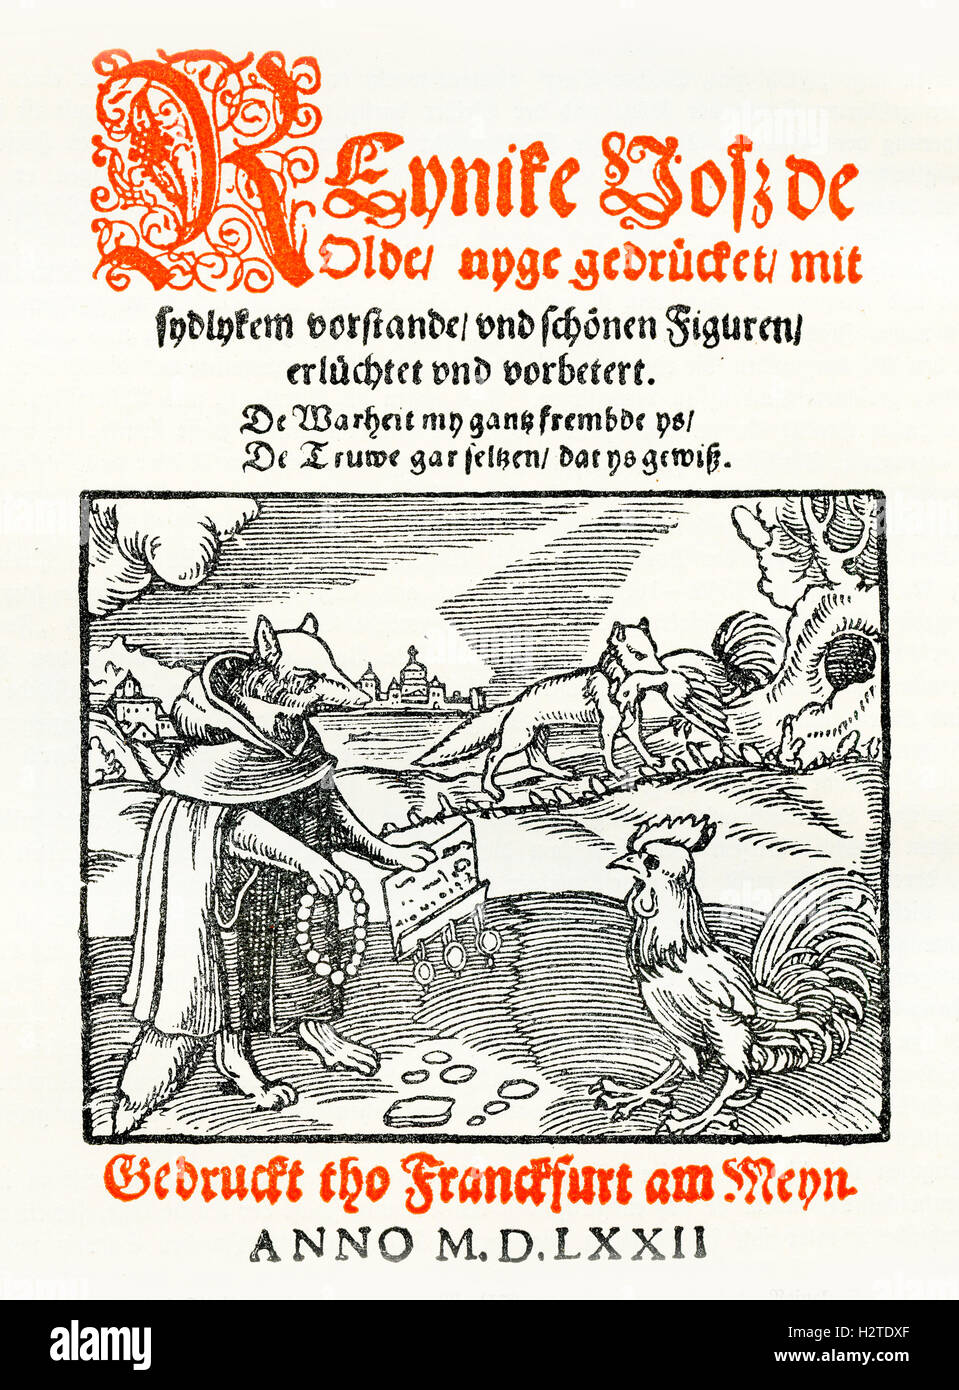 Année 1572, couverture de livre d'impression livre satirique Banque D'Images